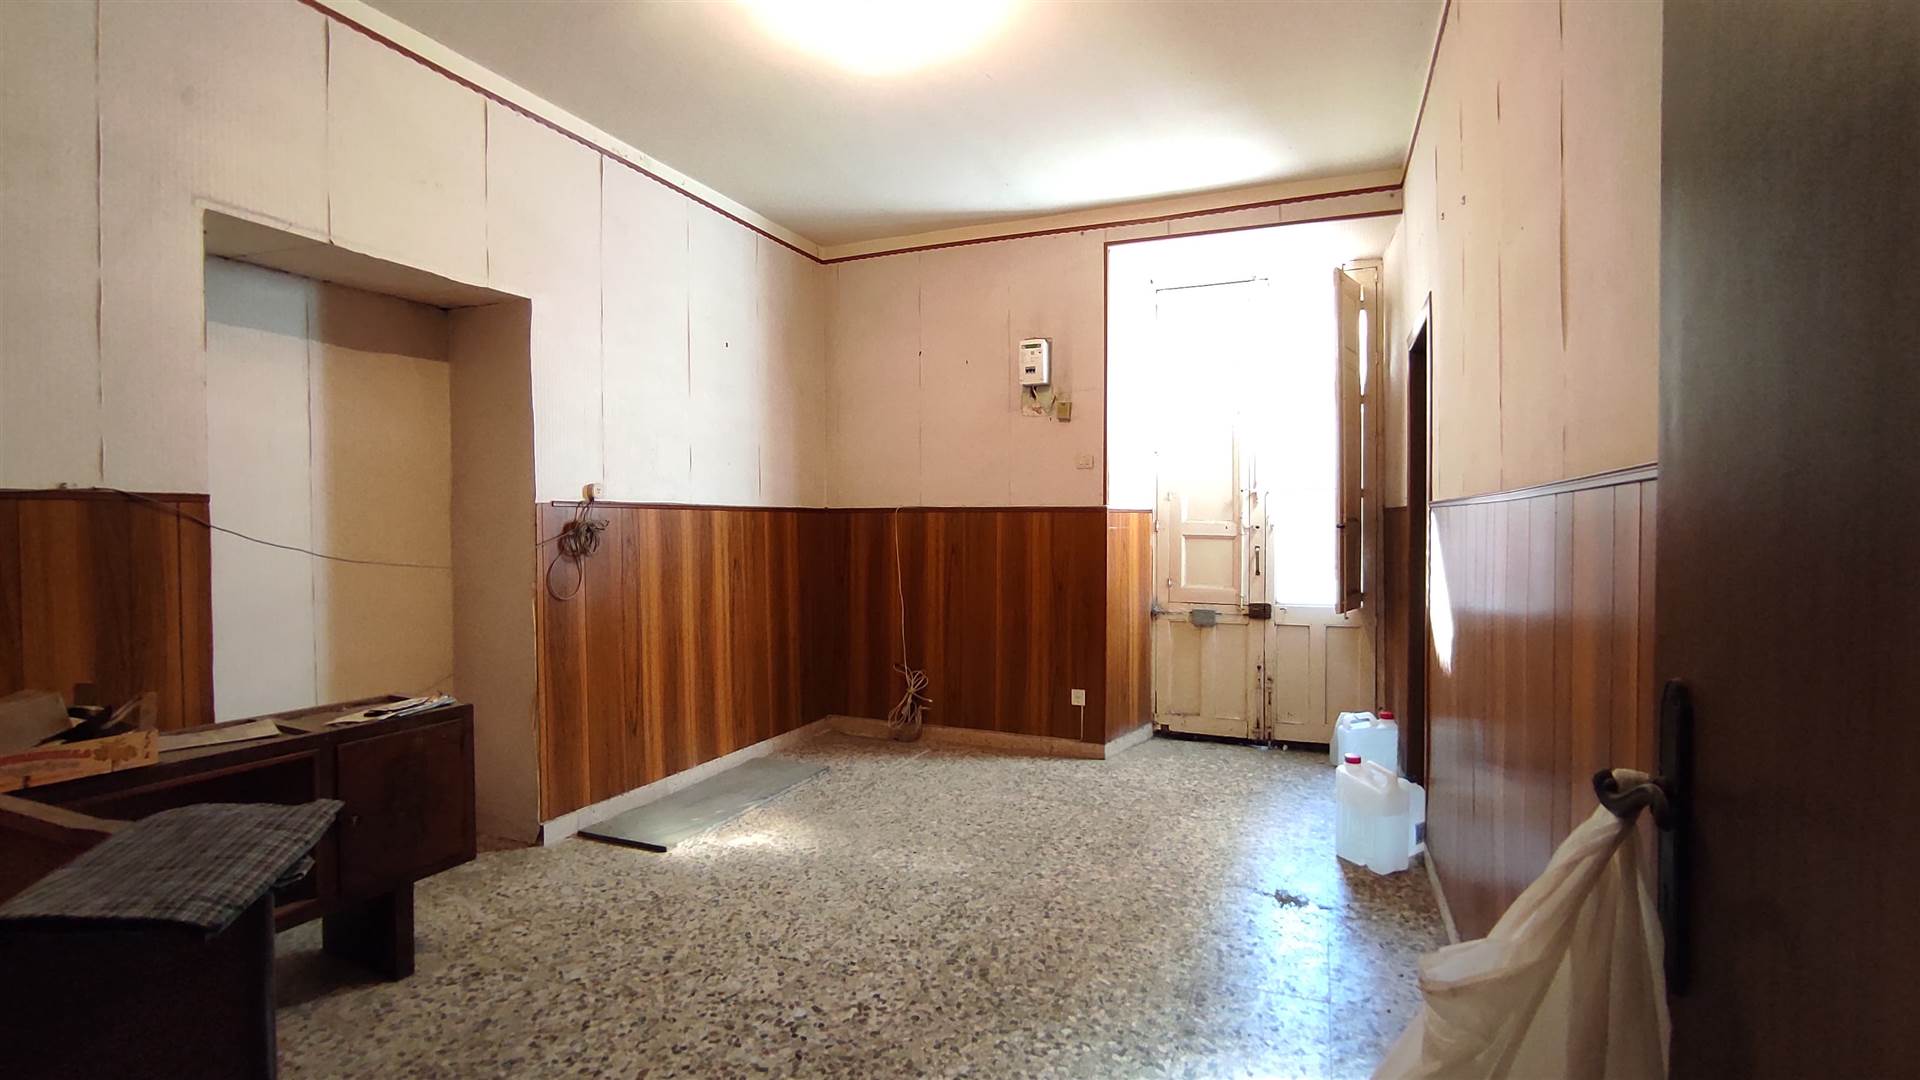 Appartamento in vendita a Adrano, 5 locali, prezzo € 28.000 | PortaleAgenzieImmobiliari.it